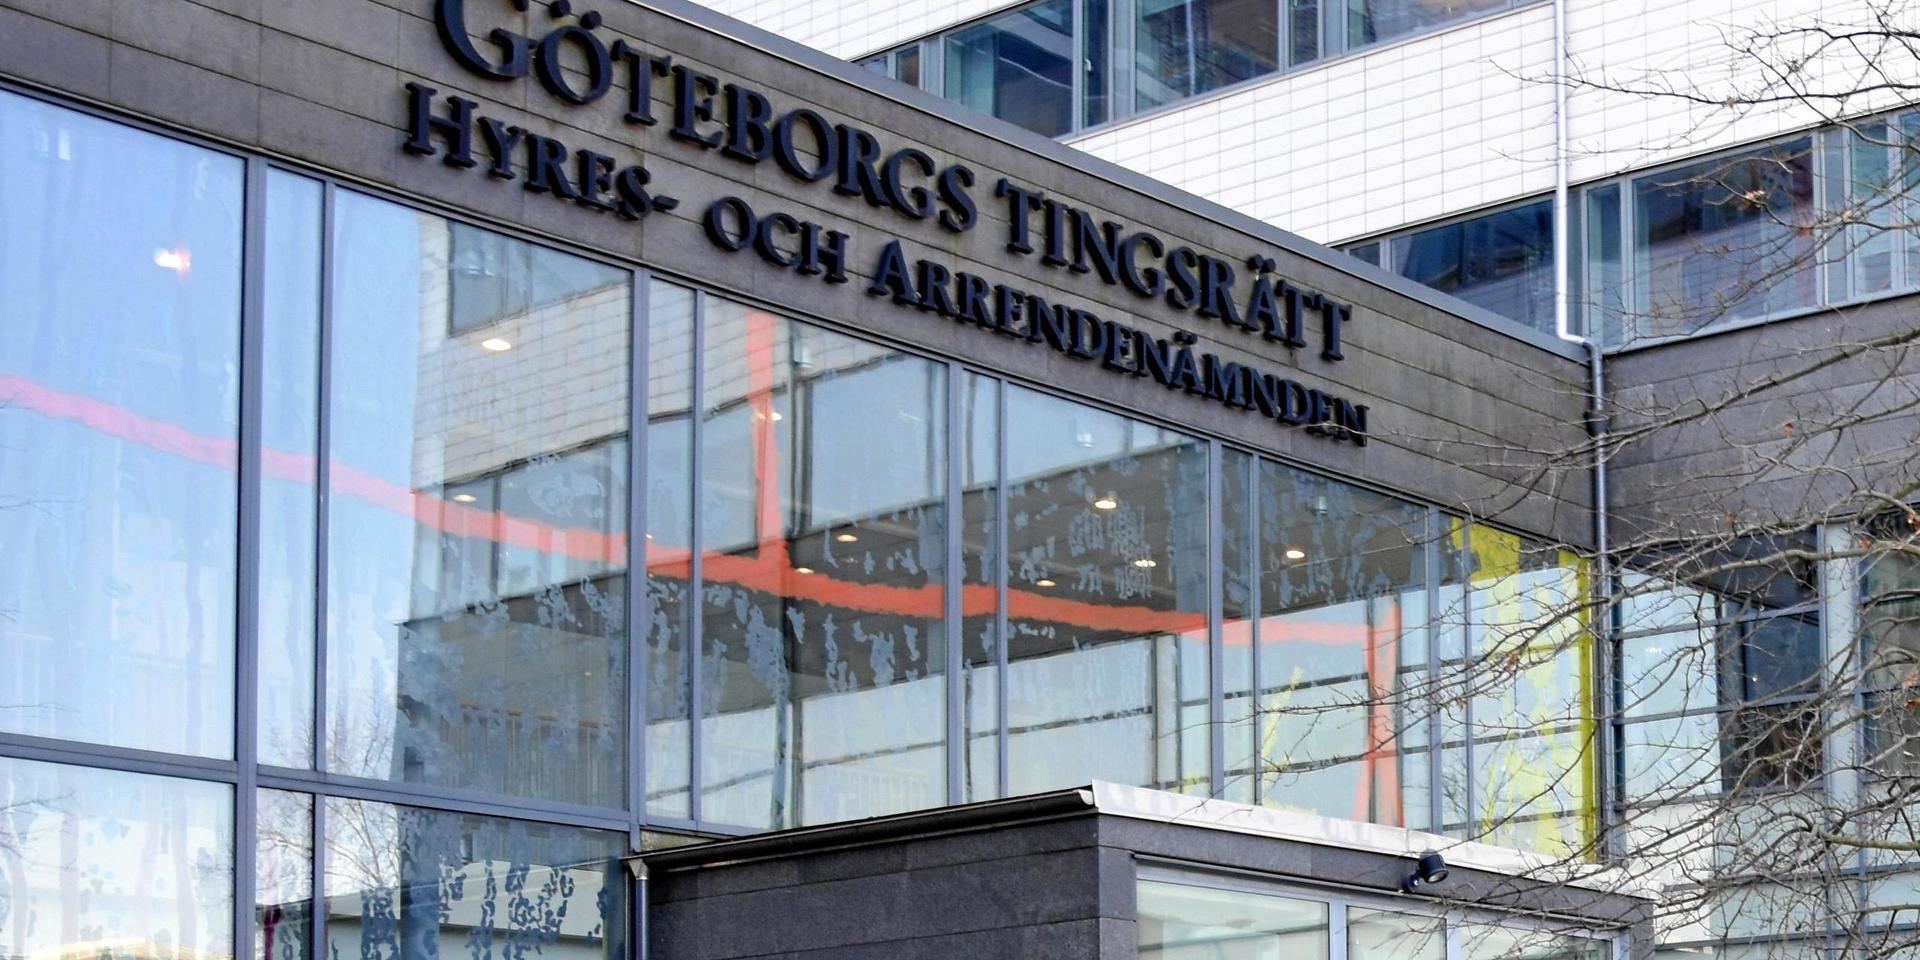 Åtal mot männen har väckts vid Göteborgs tingsrätt.